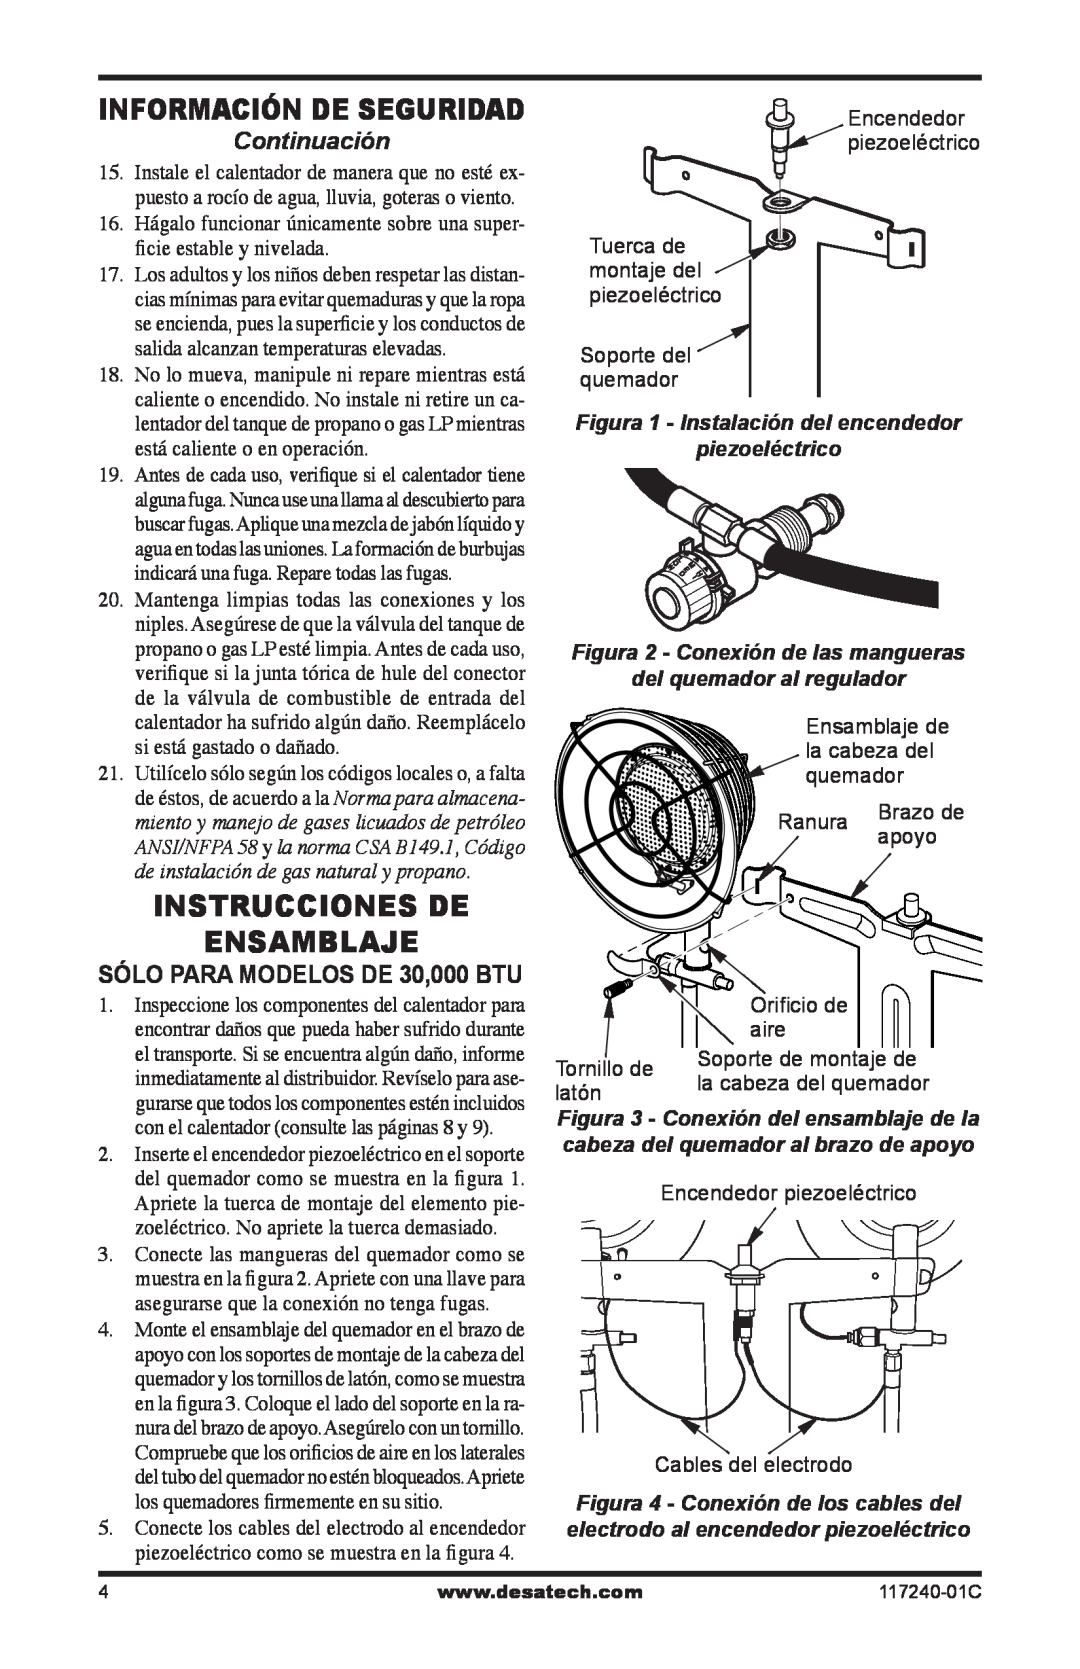 Desa 000-30, 10, 000 BTu Instrucciones de ensamblaje, Continuación, Figura 1 - Instalación del encendedor, piezoeléctrico 